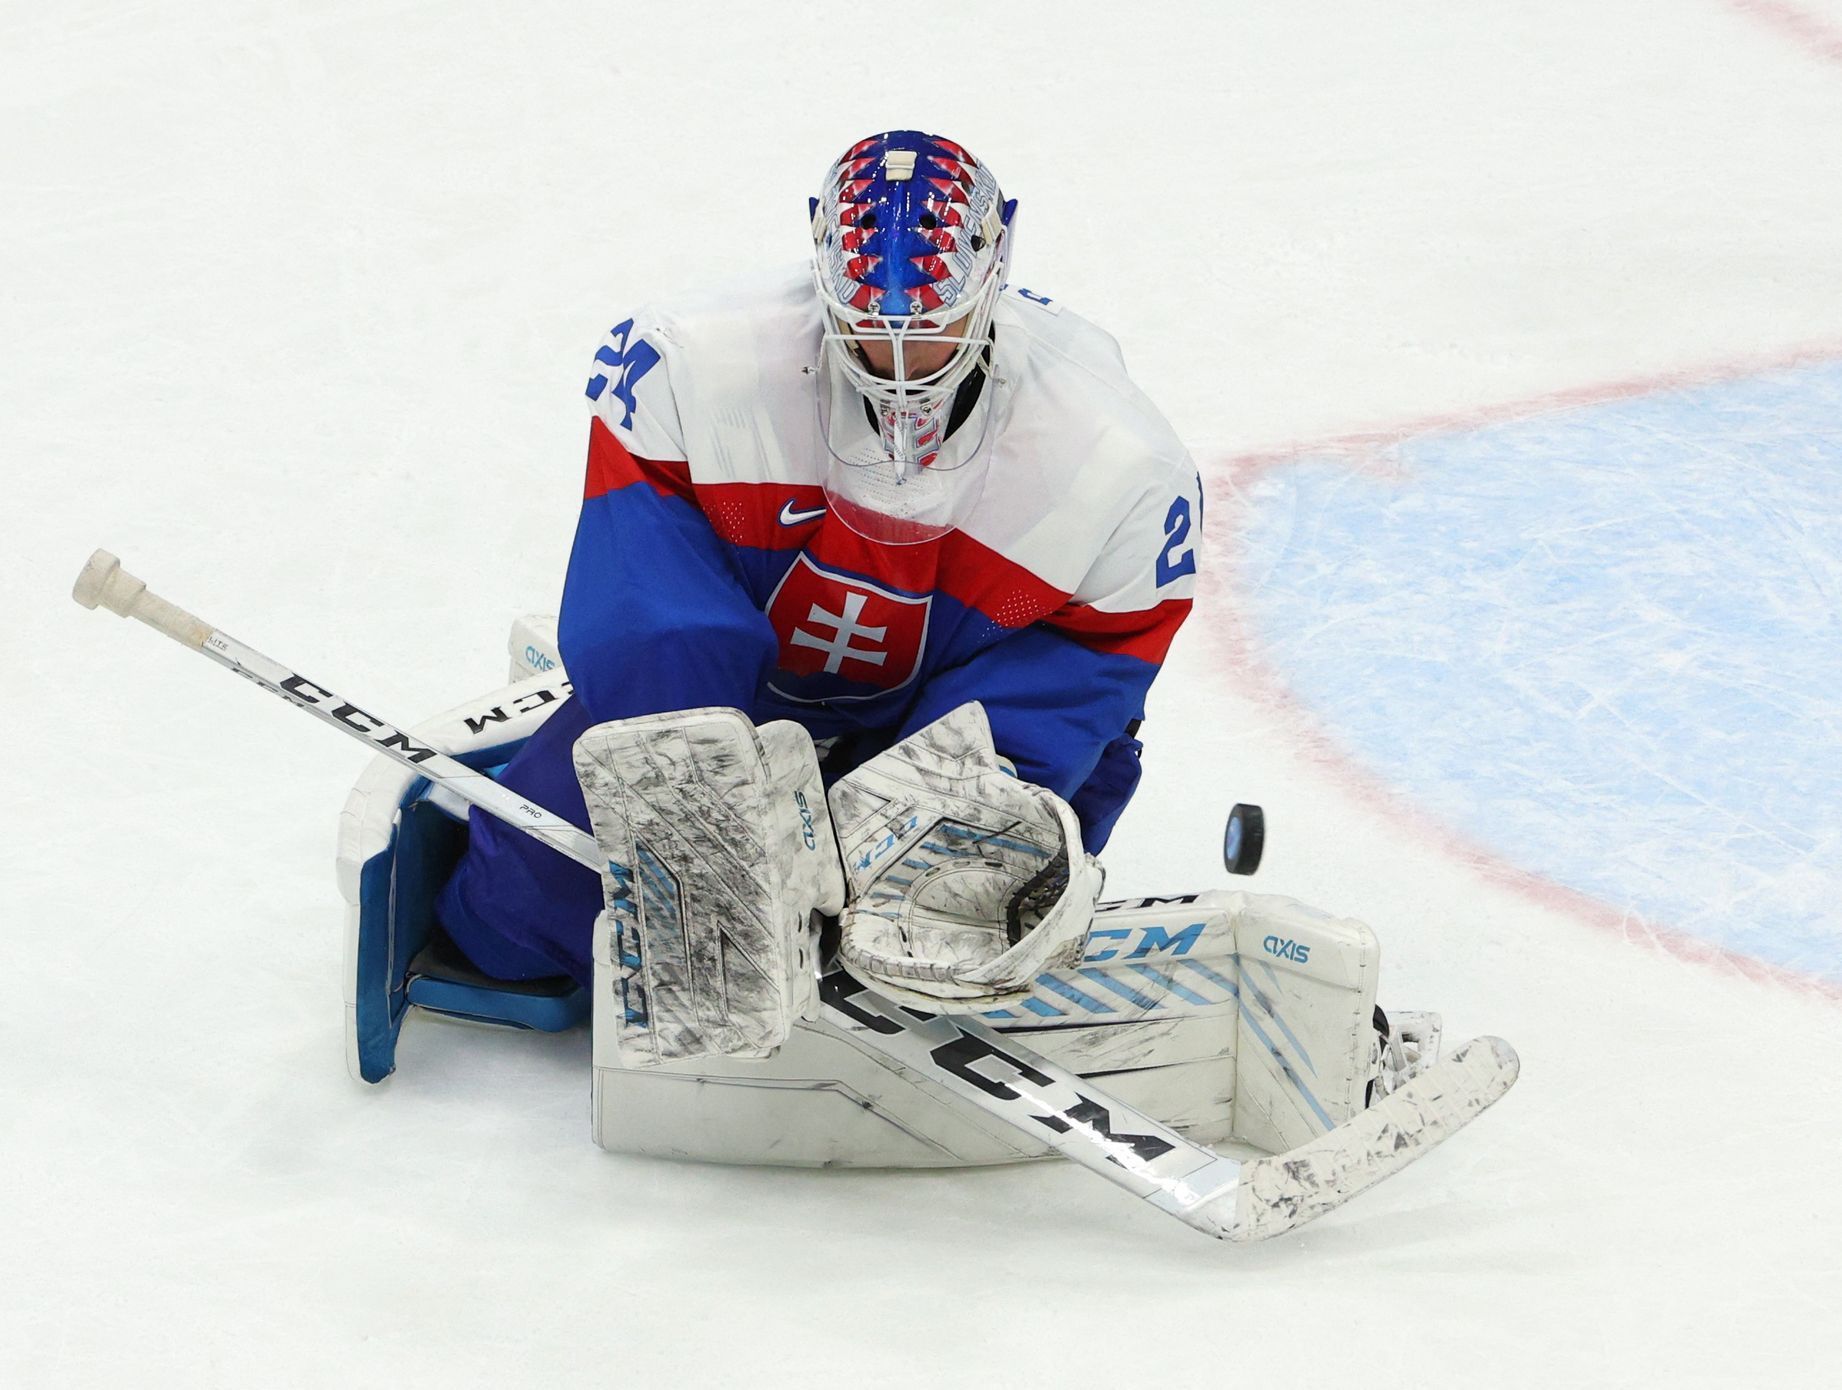 Ice Hockey - Men's Bronze Medal Game - Sweden v Slovakia